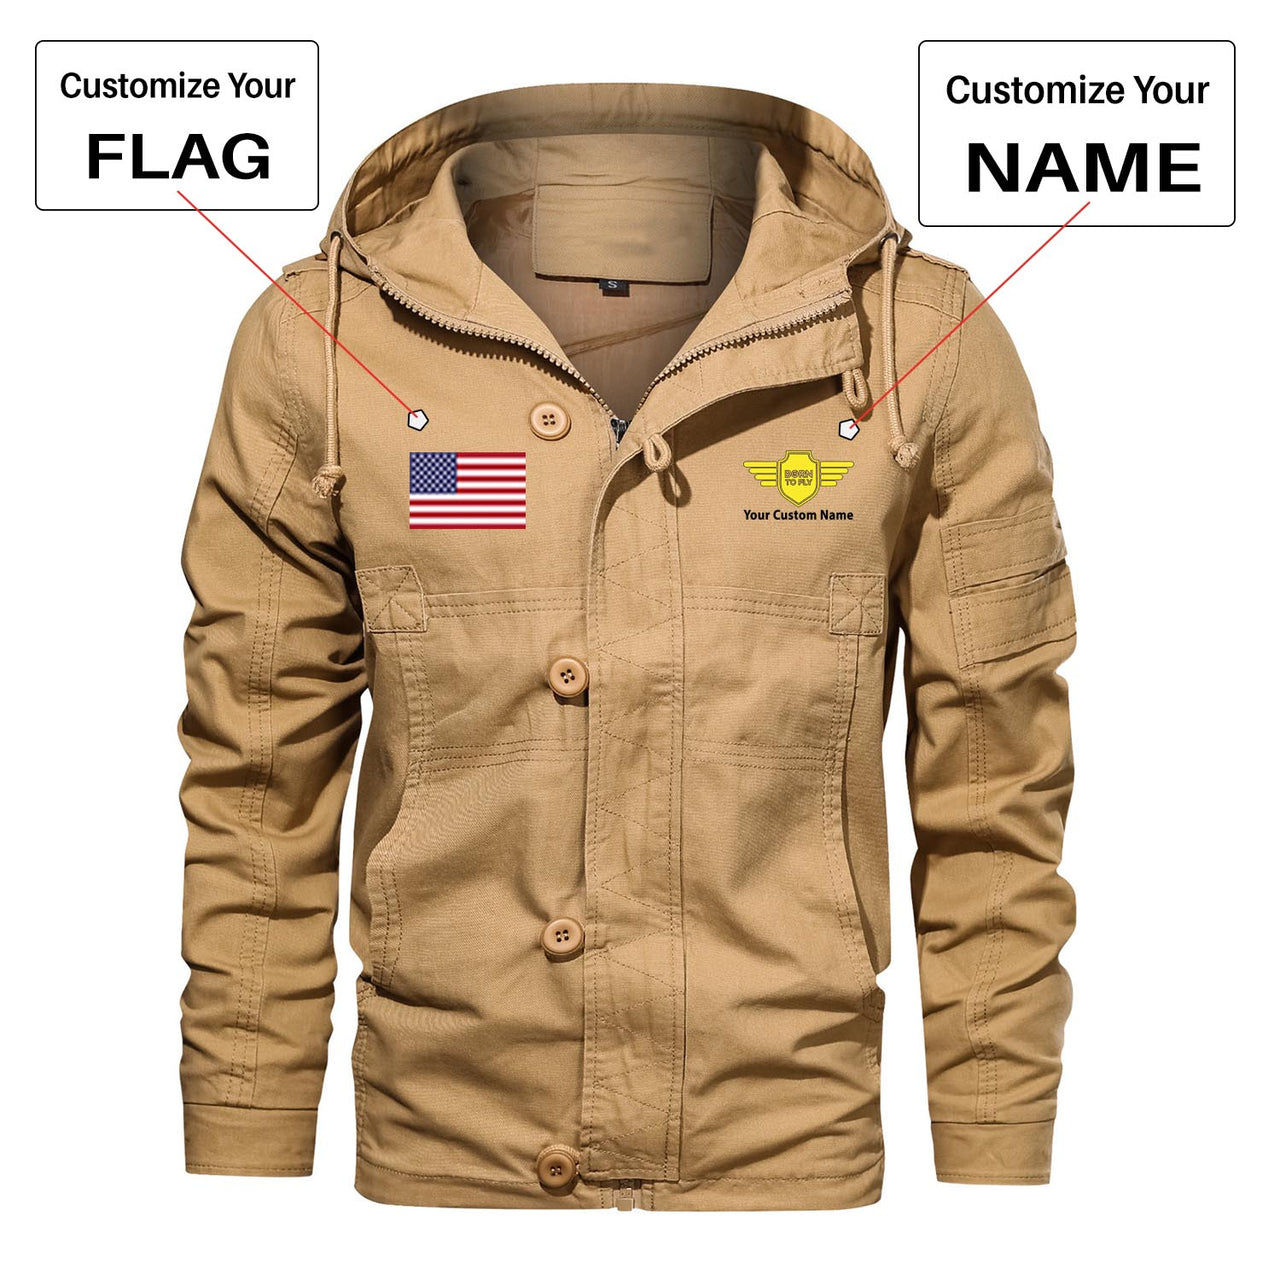 Custom Flag & Name "Badge 5" Designed Cotton Jackets